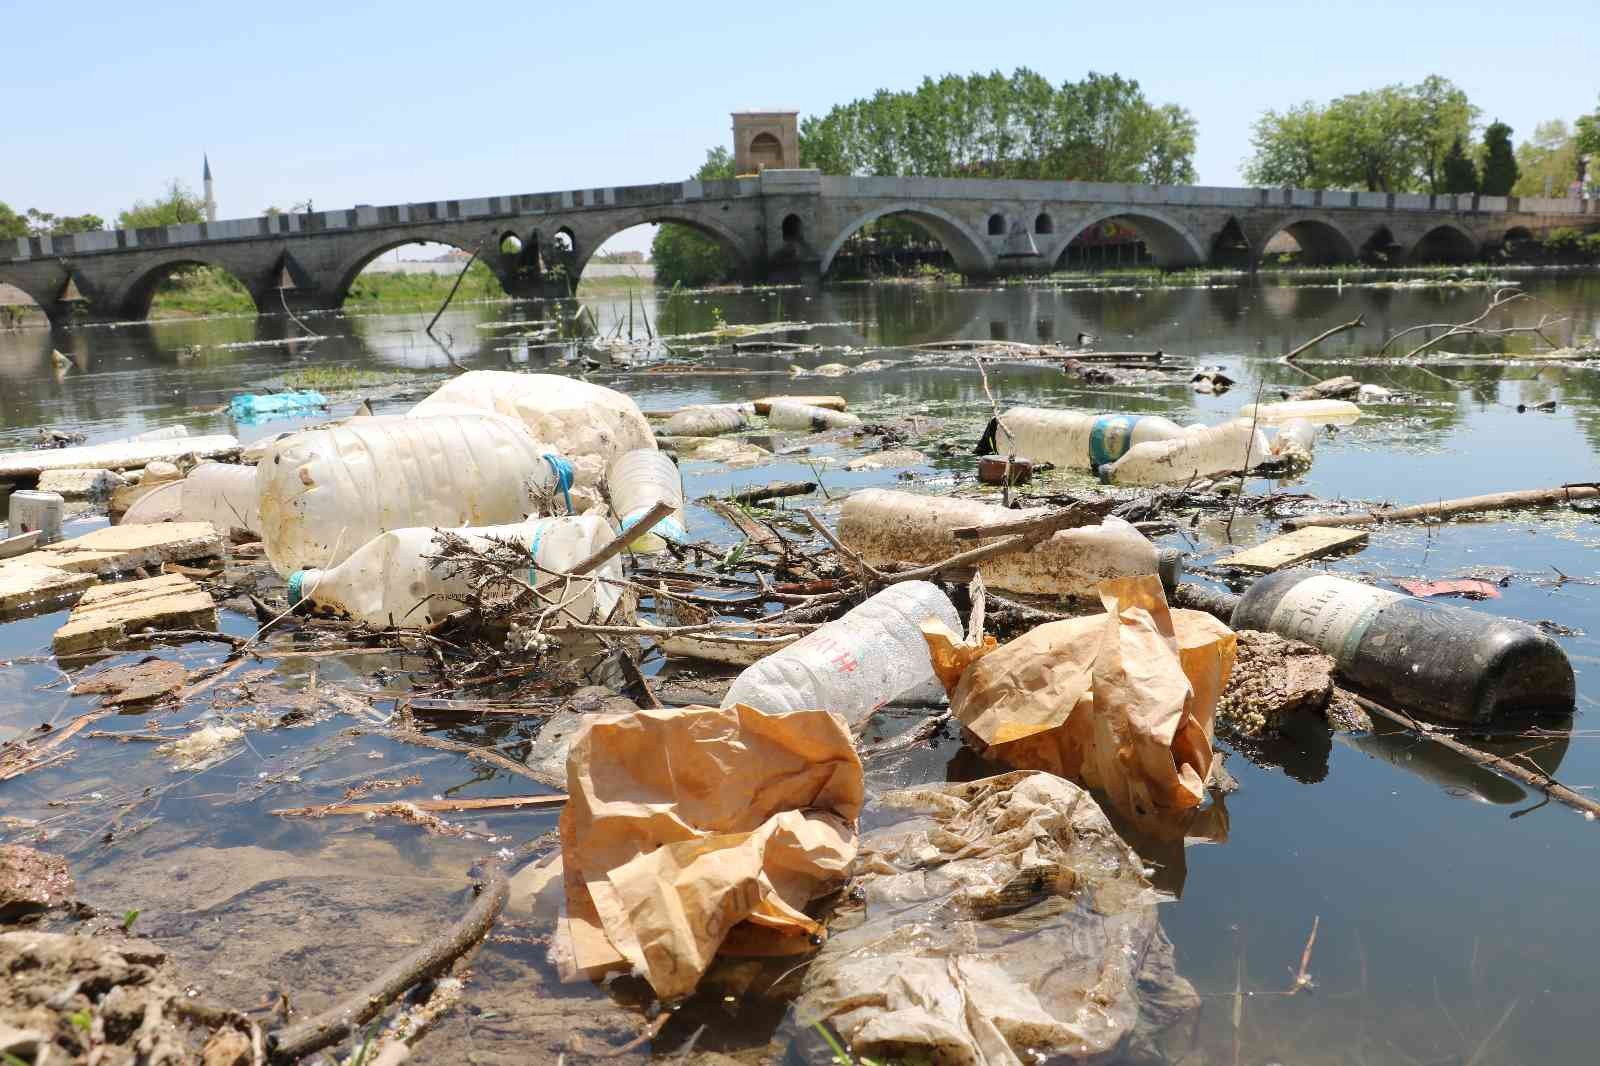 EDİRNE (İHA) – Edirne’de binlerce tarım arazisinin sulama ihtiyacını karşılayan Tunca Nehrinin su seviyesi düştü, çöpler ortaya çıktı. Bölge ...